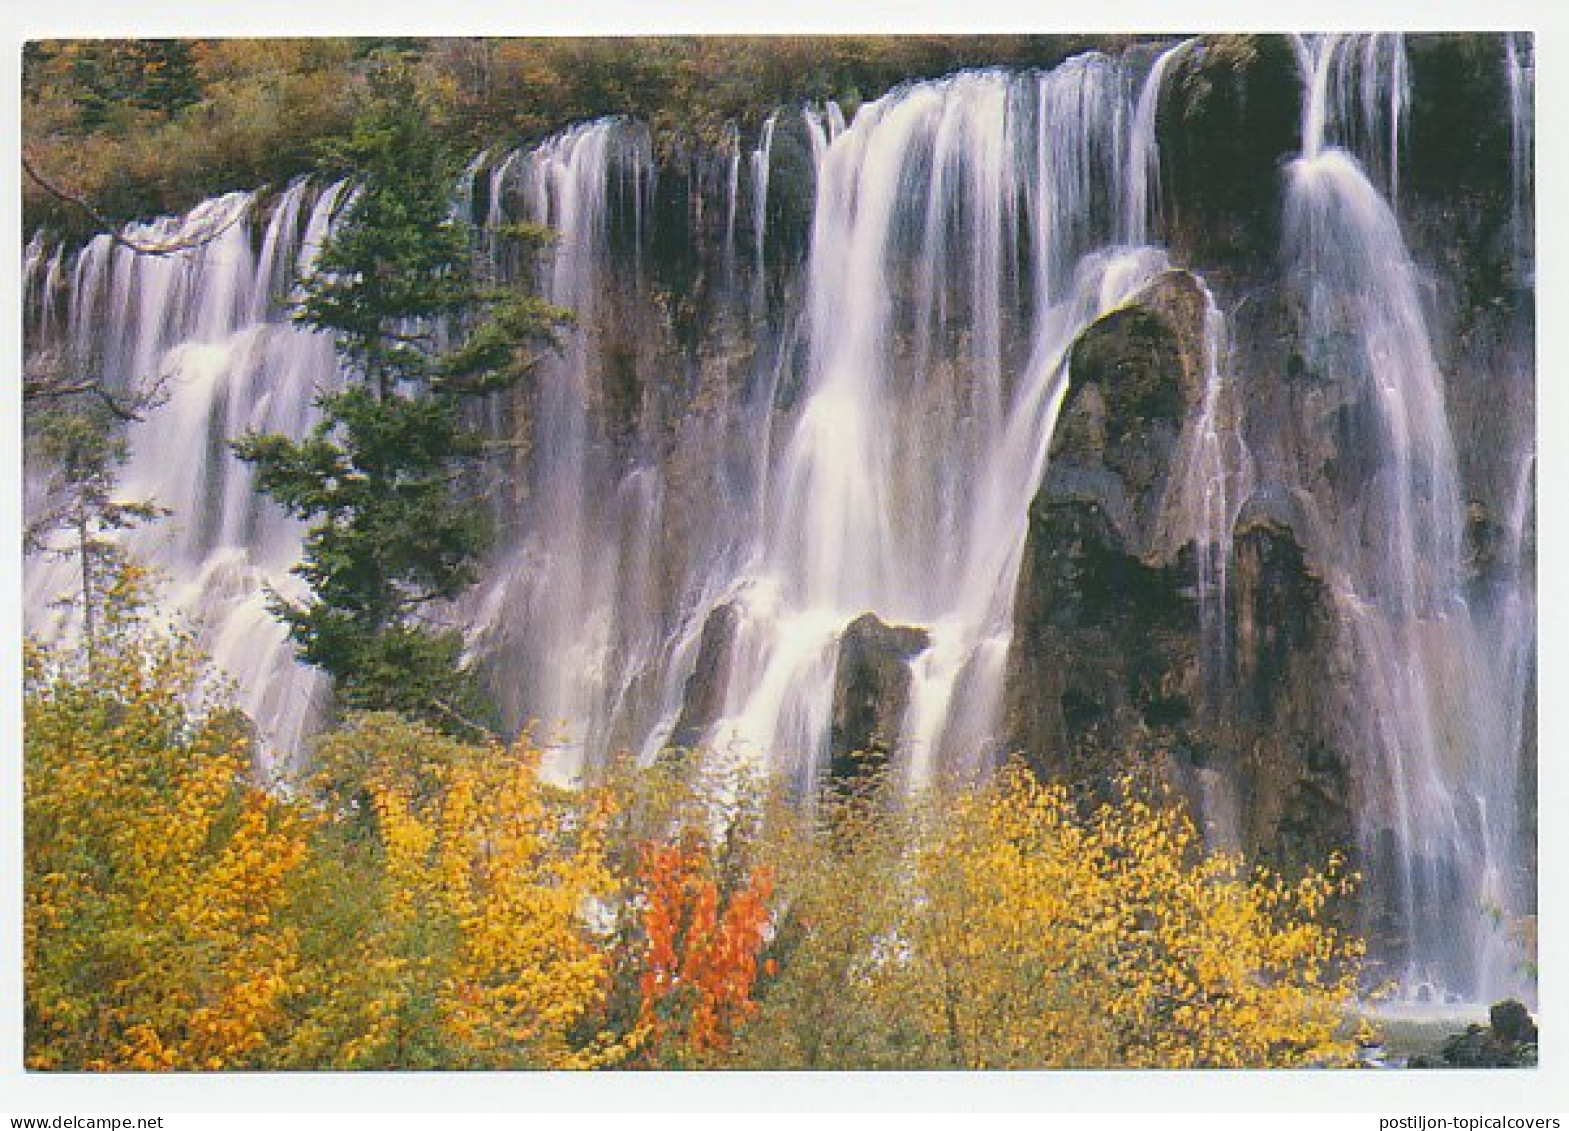 Postal Stationery China 1989 Waterfall - Unclassified